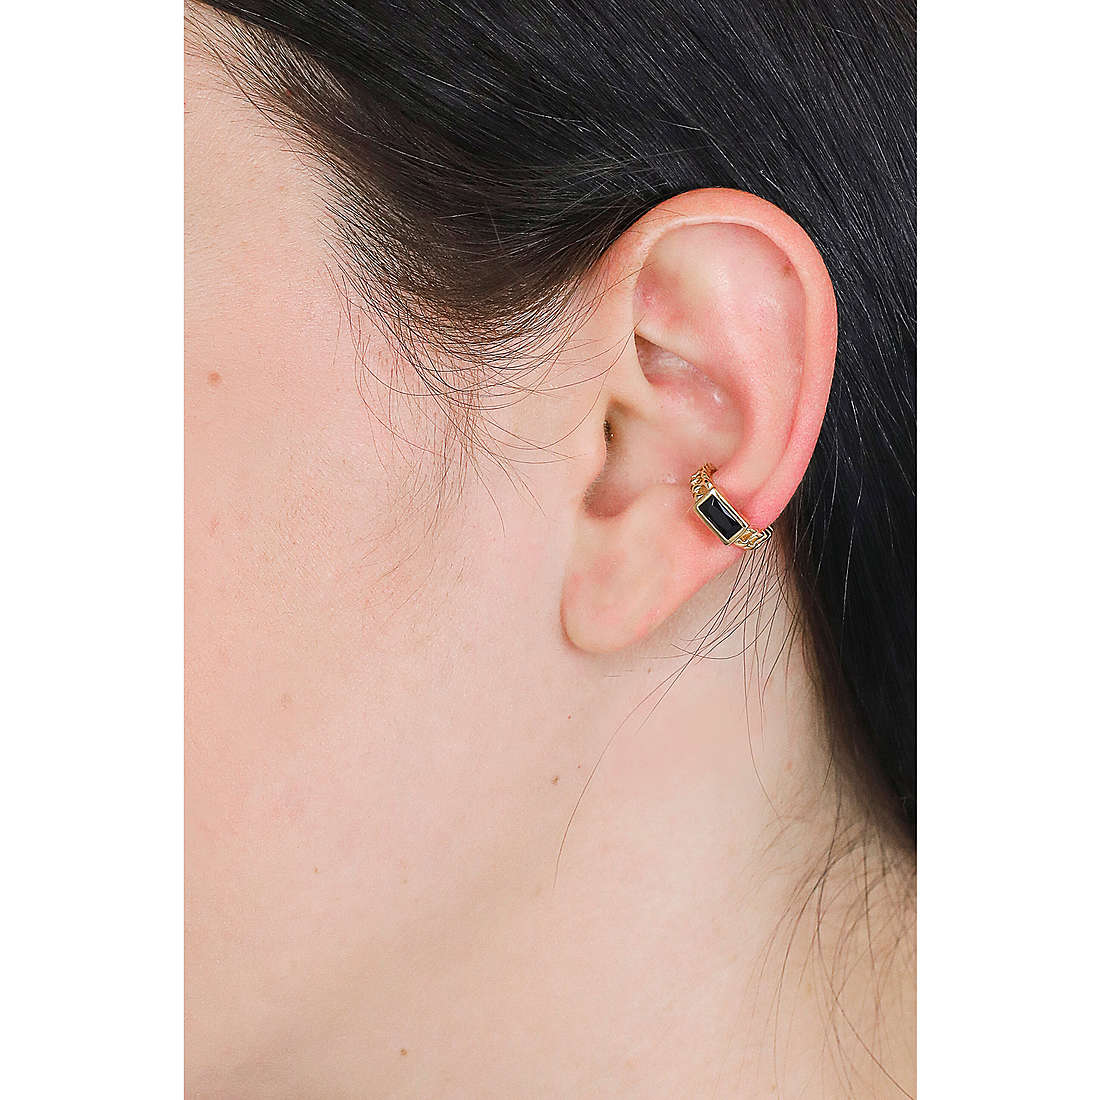 Rebecca earrings Golden ear woman SGEOON02 wearing